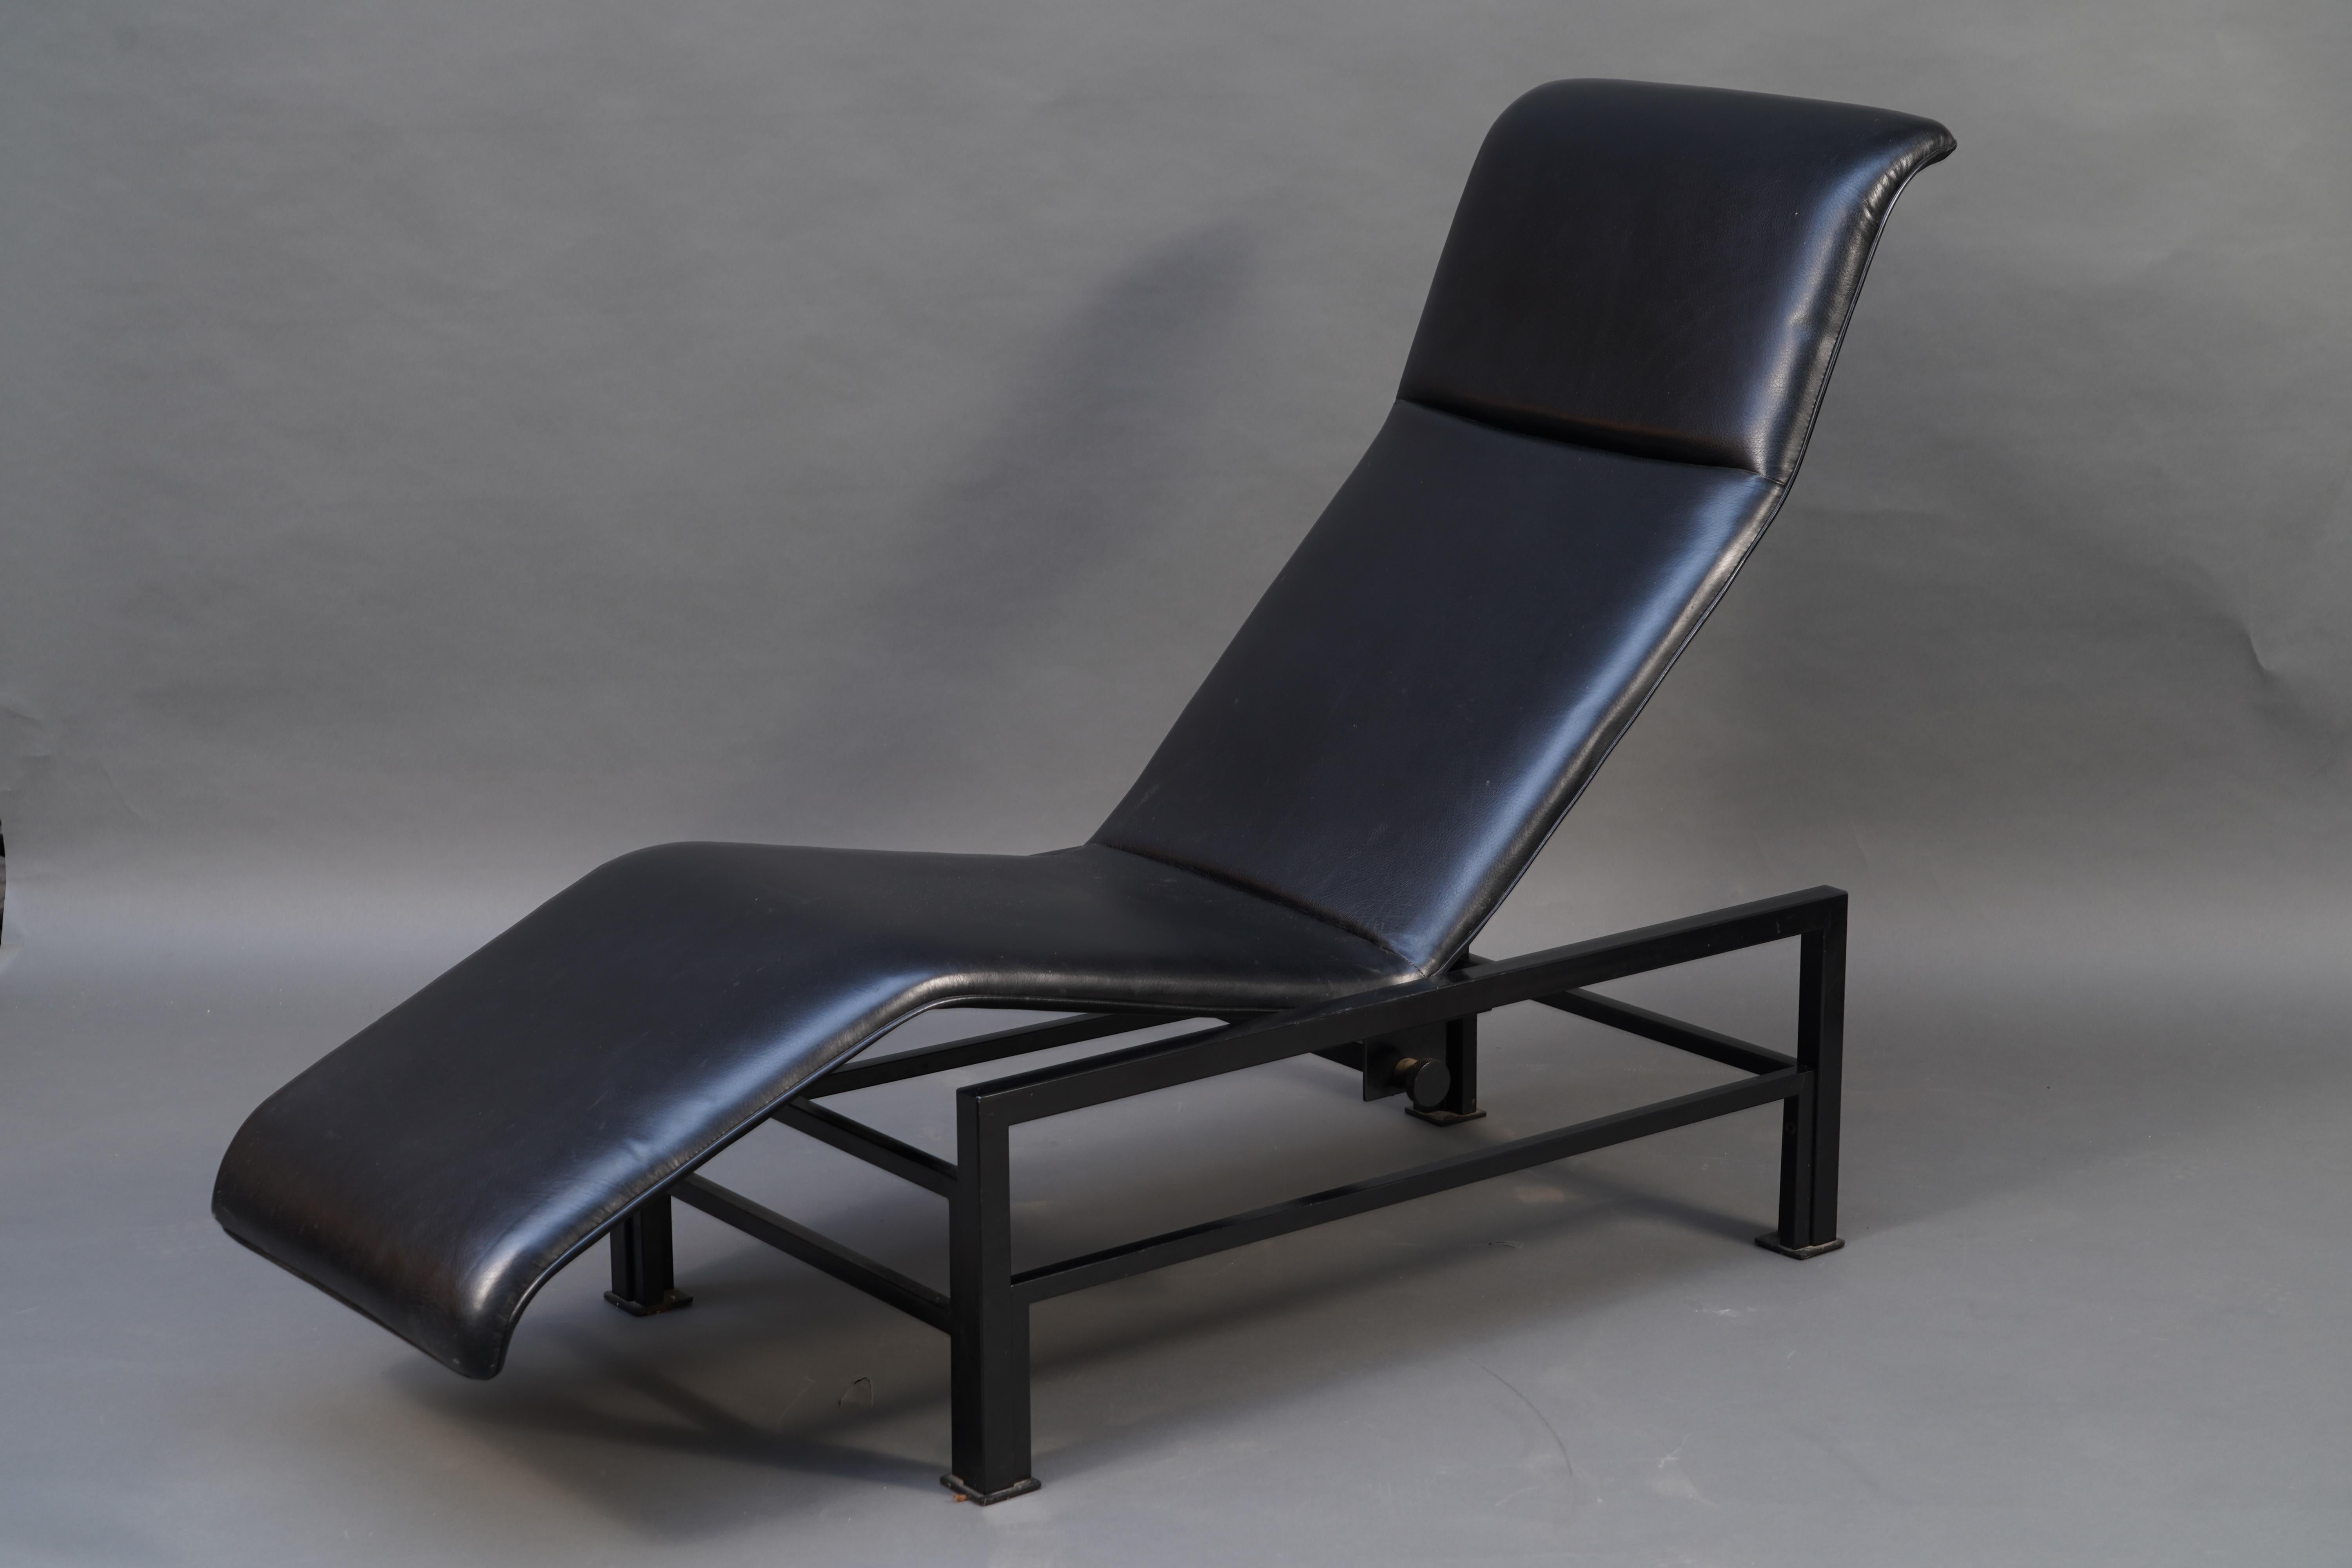 Rare fauteuil de salon en cuir noir et métal laqué noir, avec système de réglage de l'inclinaison par vis de blocage. Cette chaise longue conçue par Samuel Coriat a vu le jour en 1986 et bénéficie d'un confort et d'un design exceptionnels.

Artelano